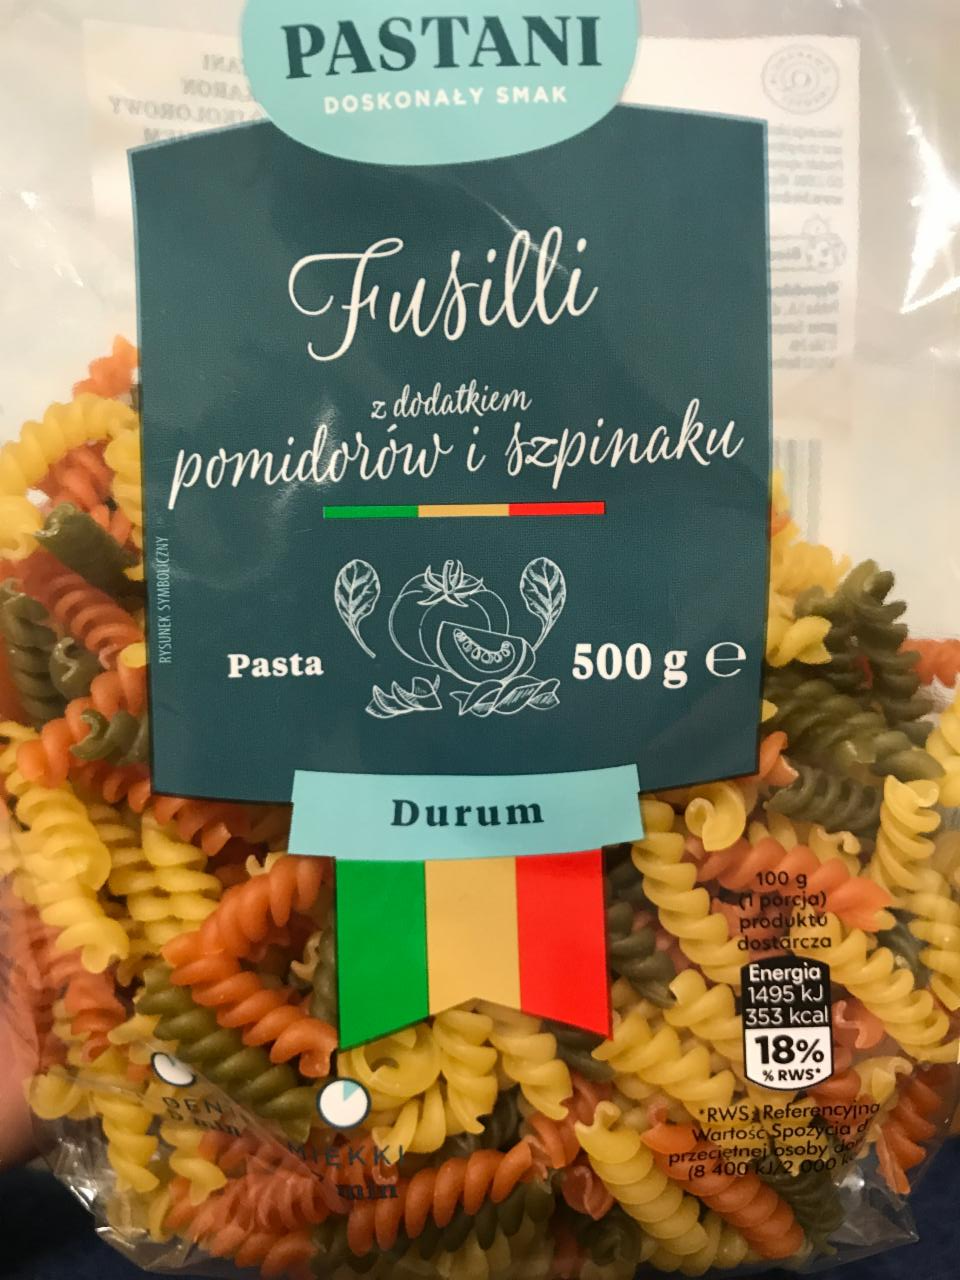 Fotografie - Fusilli z dodatkiem pomidorów i szpinaku Pastani